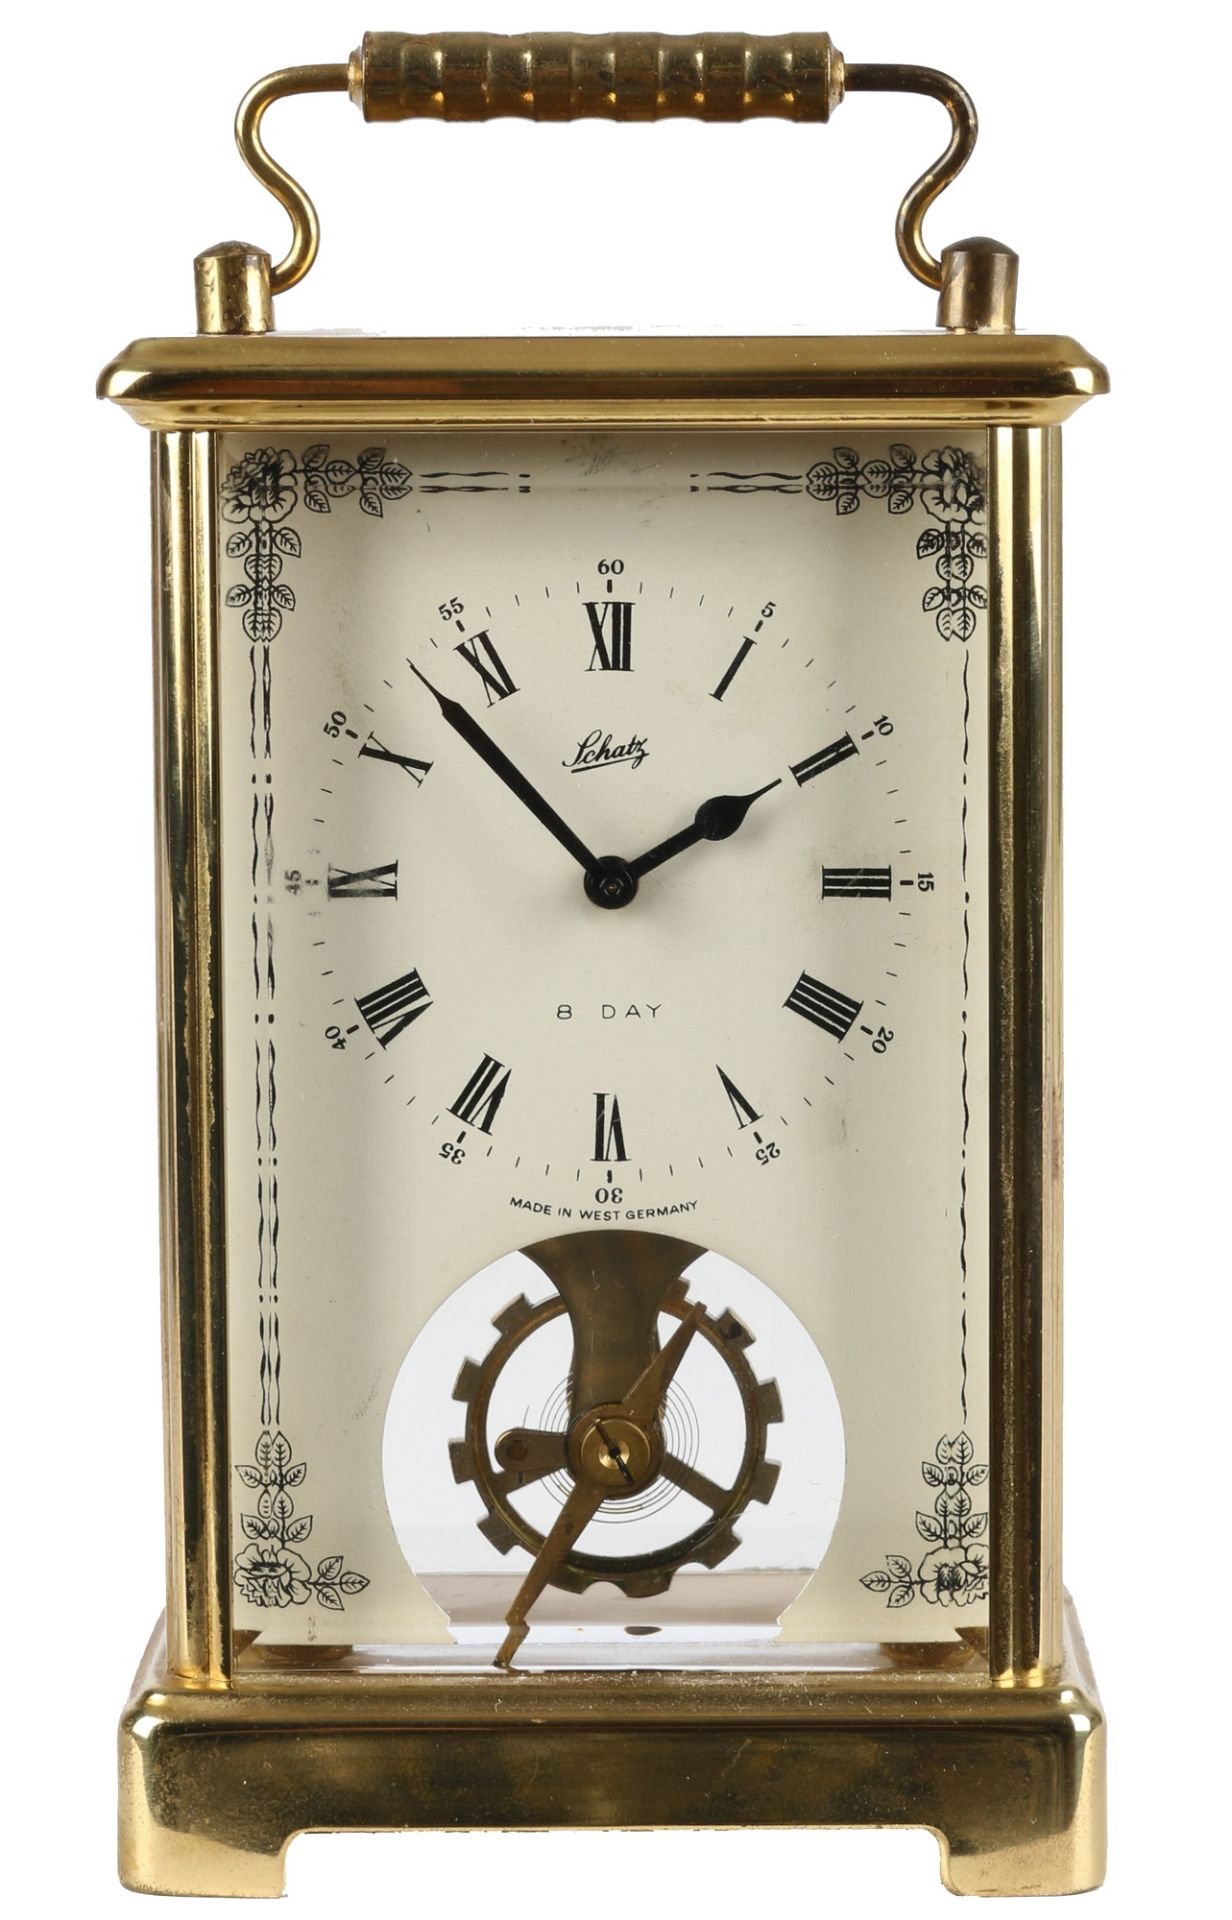 August Schatz Reiseuhr, carriage clock,